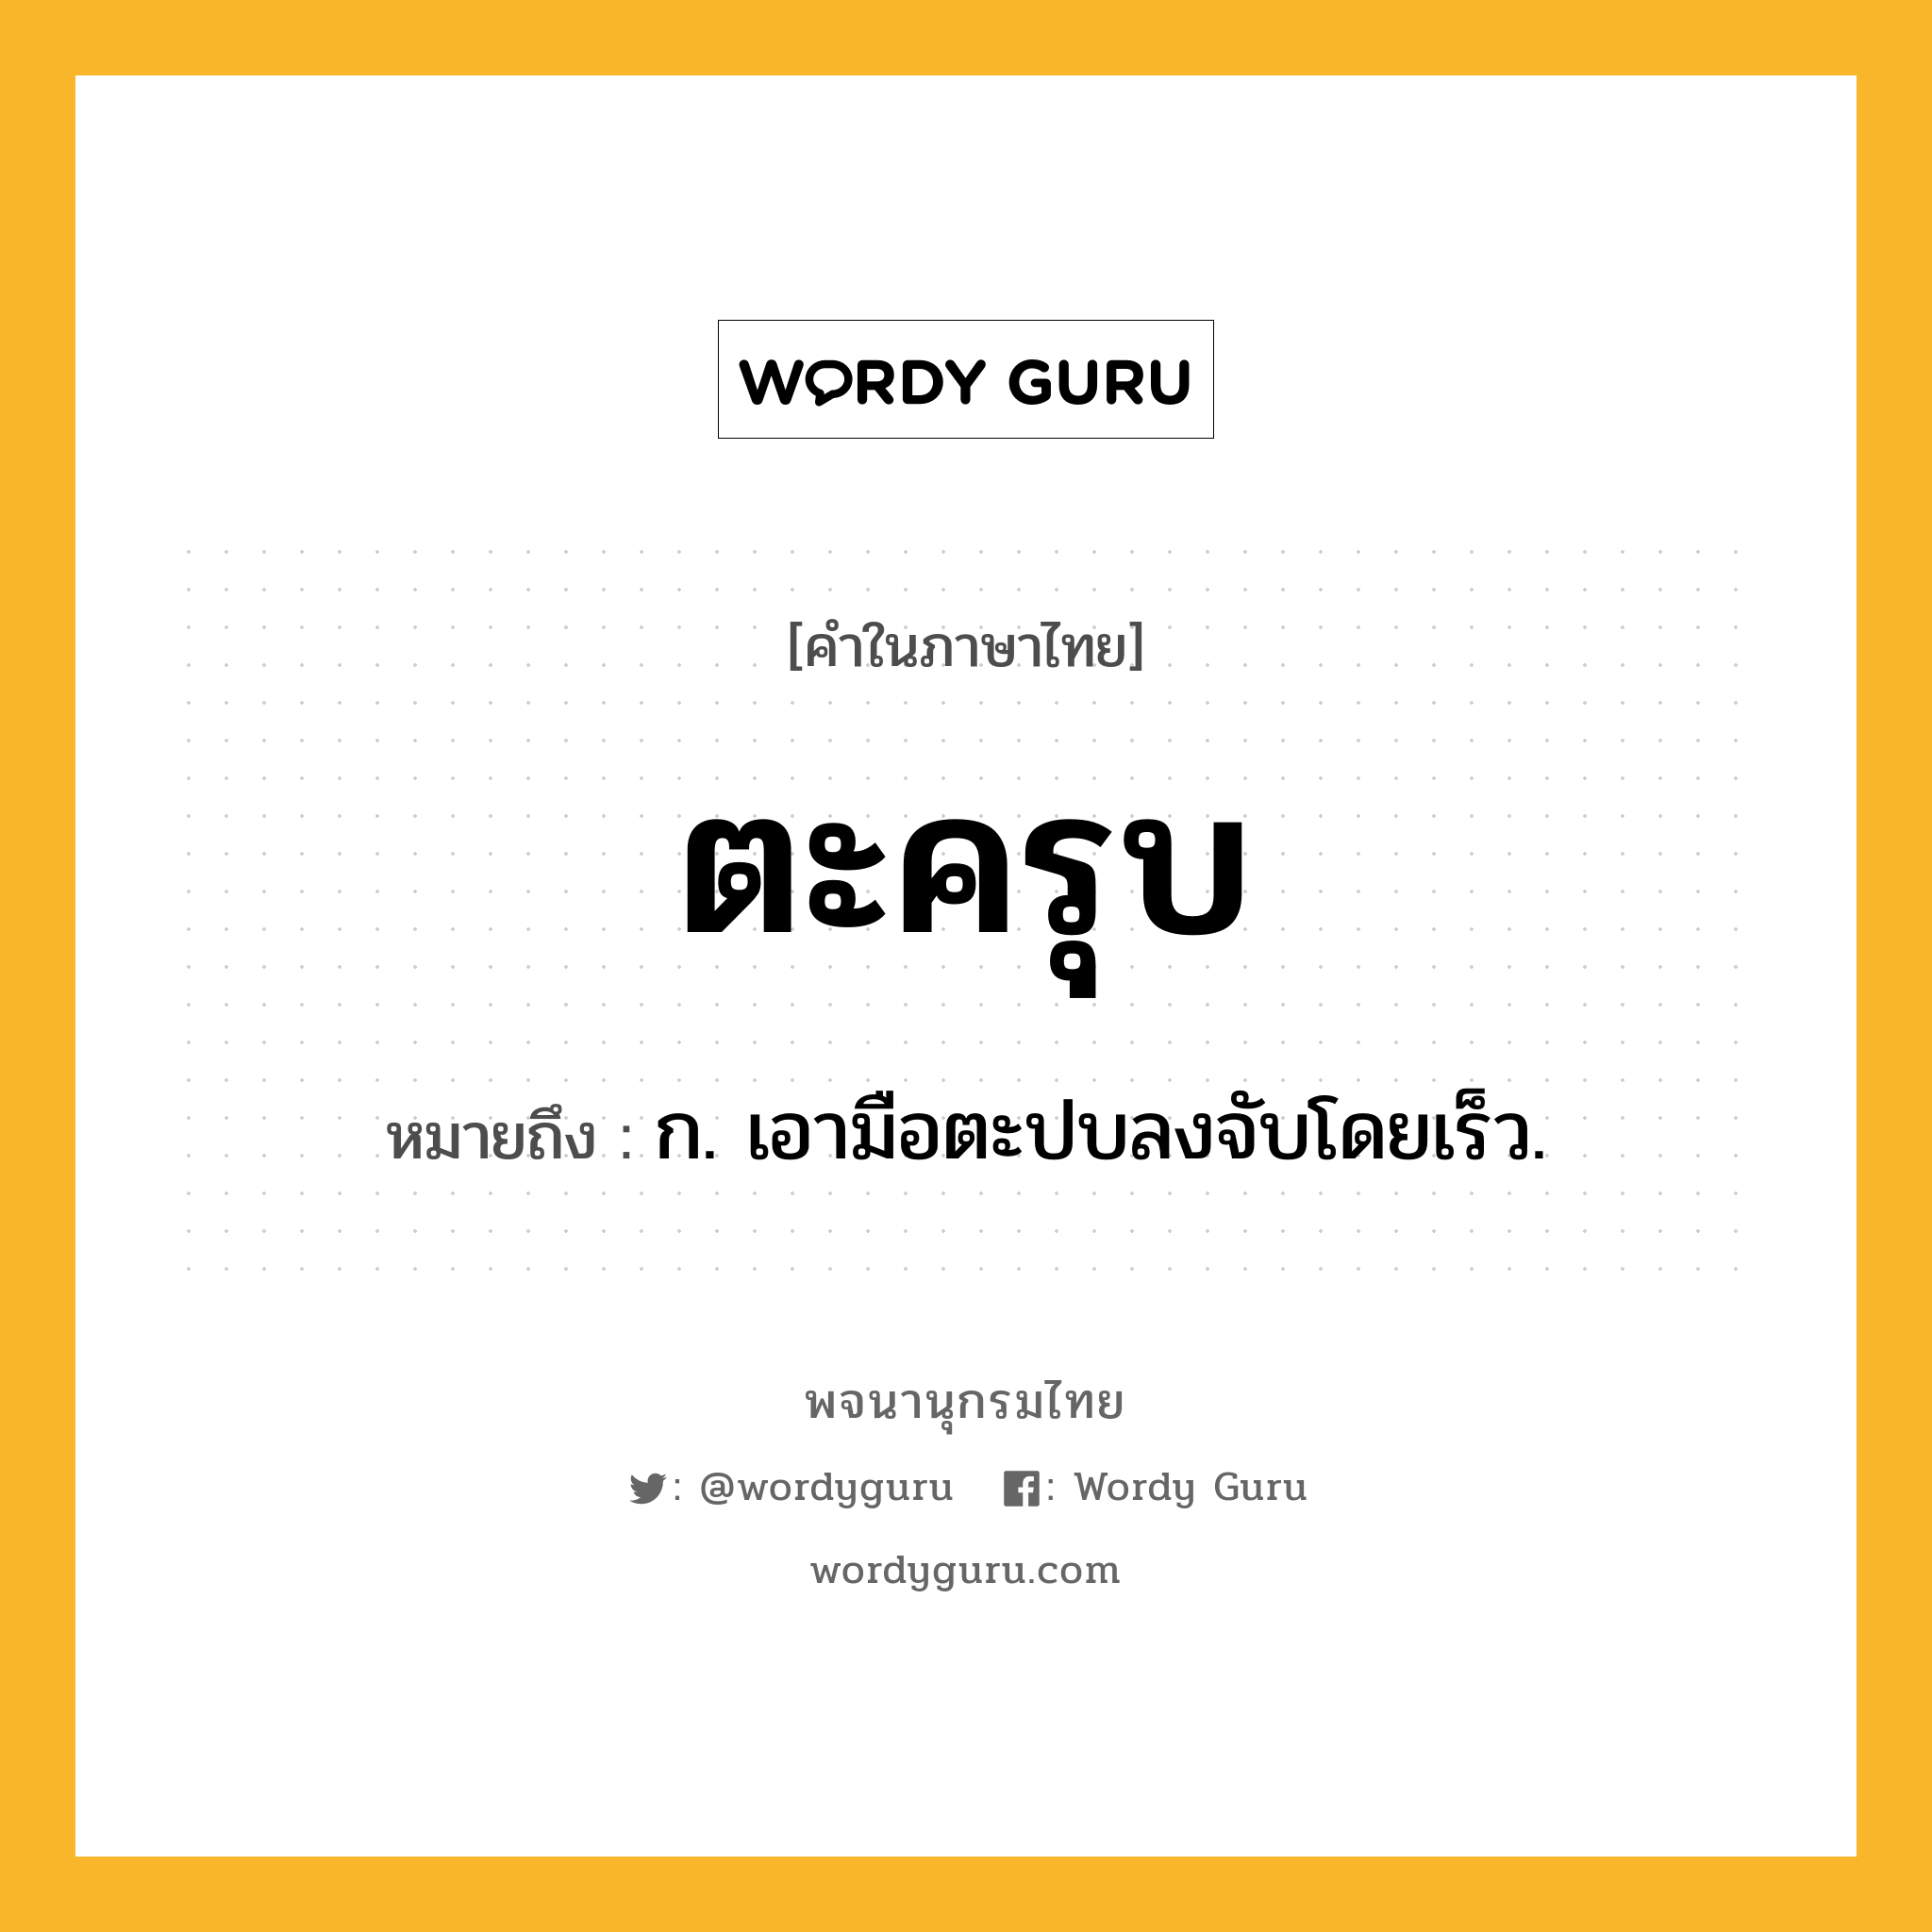 ตะครุบ หมายถึงอะไร?, คำในภาษาไทย ตะครุบ หมายถึง ก. เอามือตะปบลงจับโดยเร็ว.